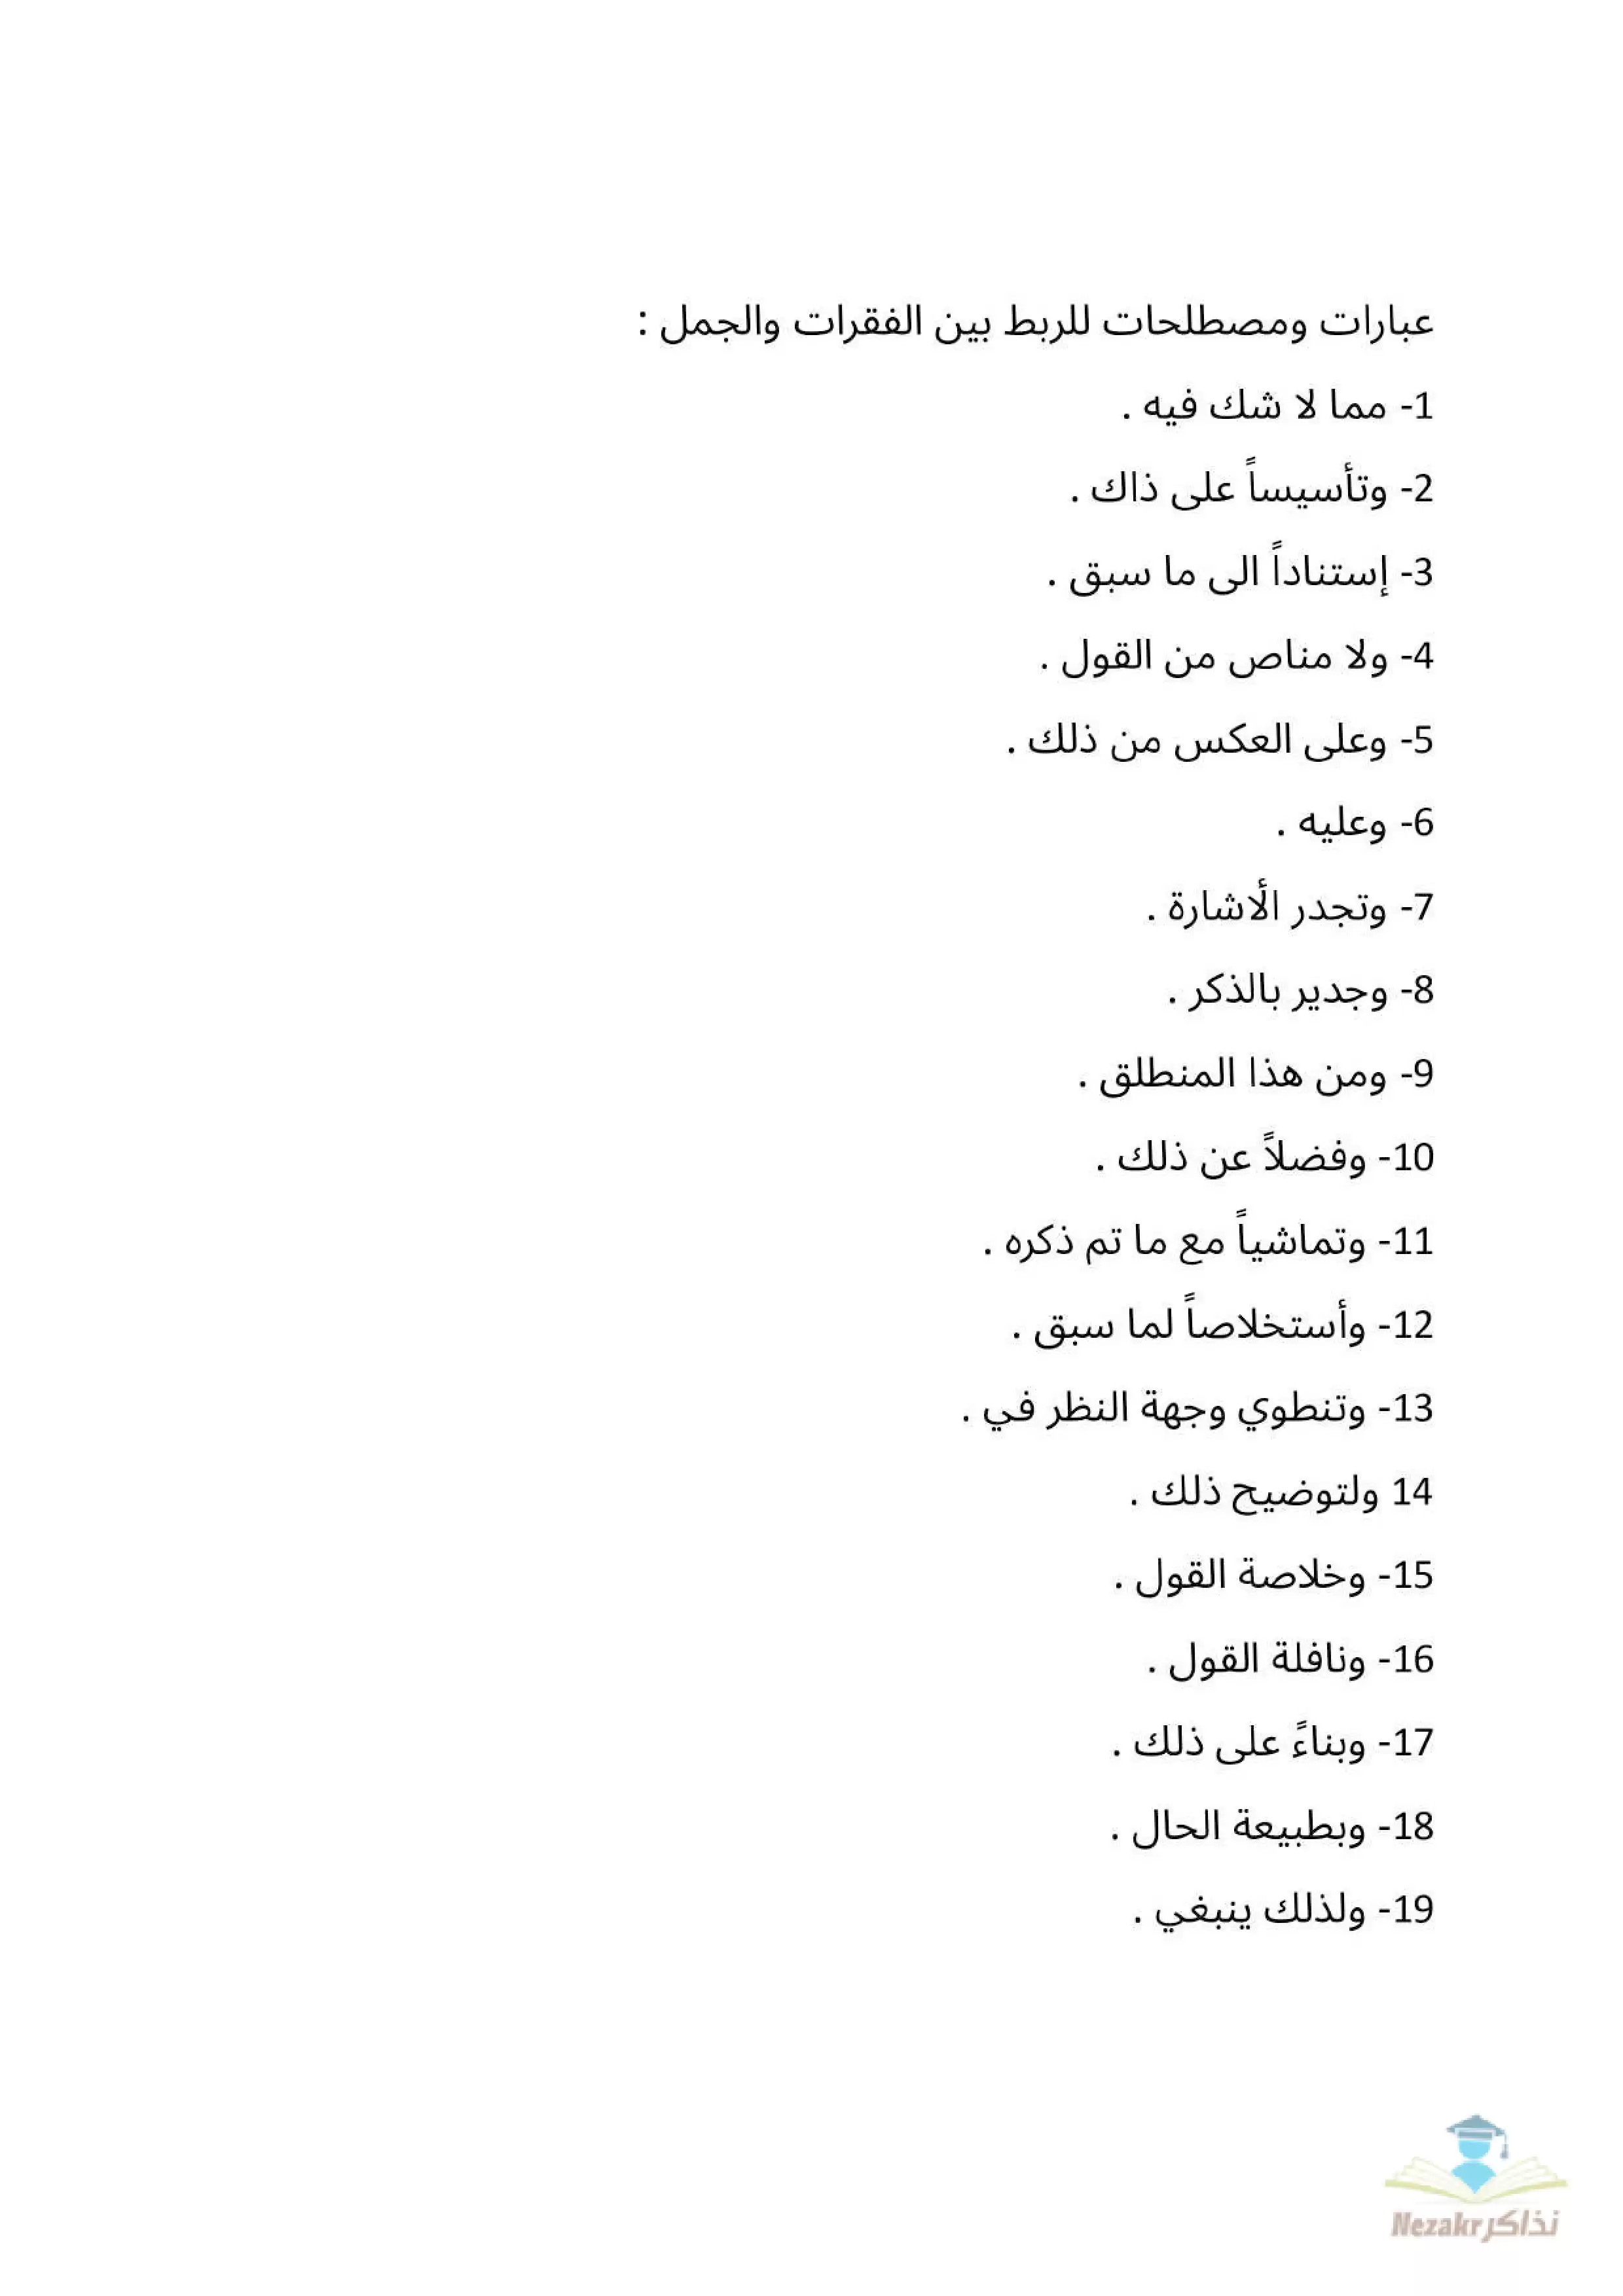 تجميع عبارات ومصطلحات وأدوات للربط بين الجمل في اللغة العربية